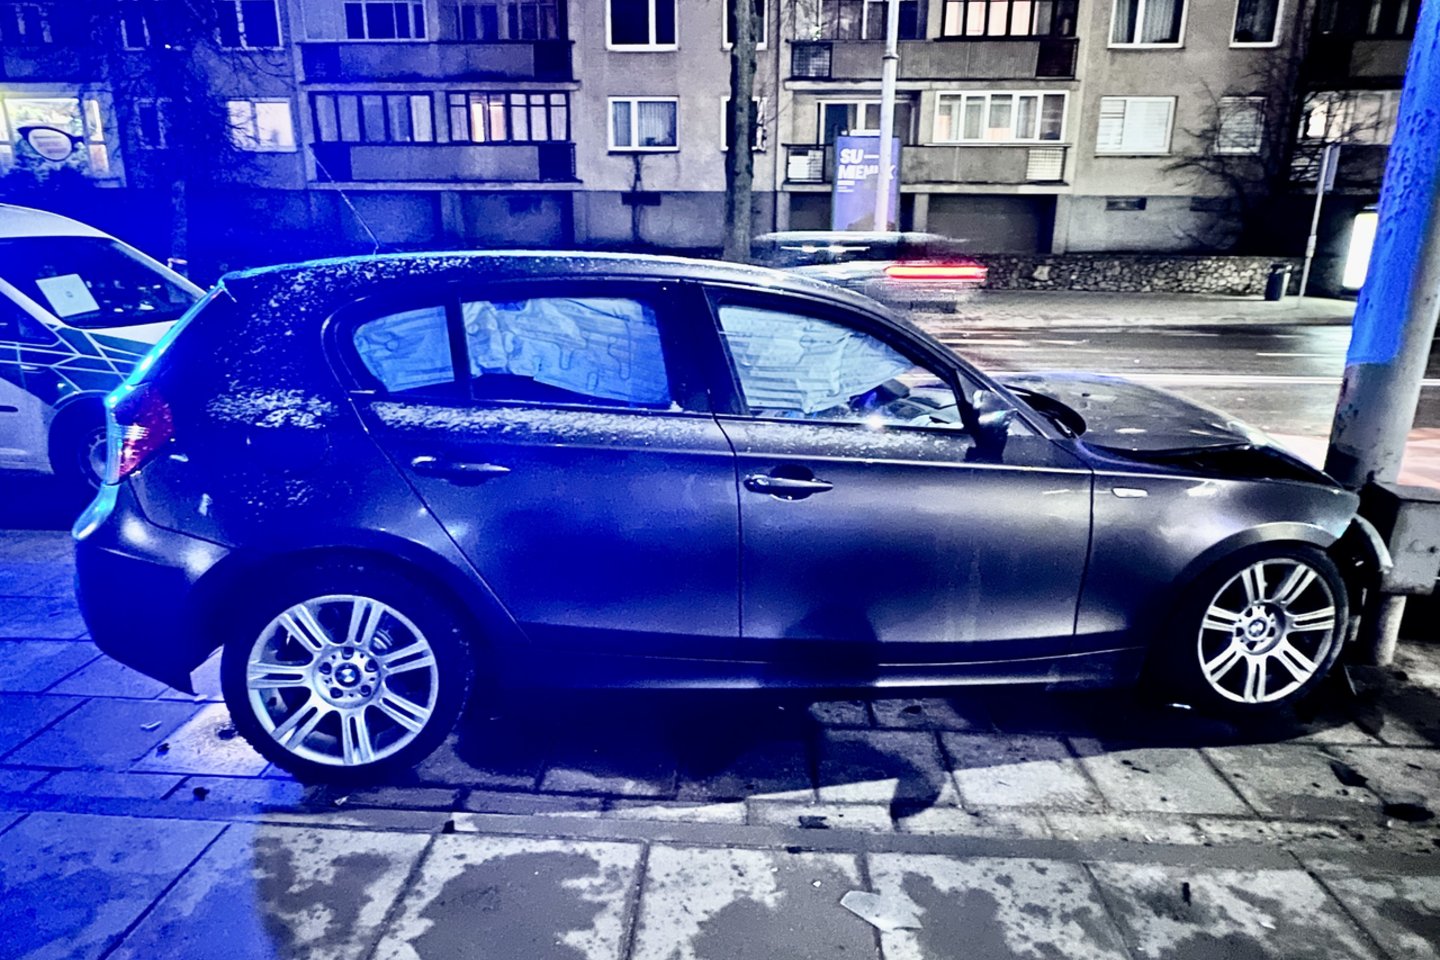  Žiauri avarija Vilniuje: kaktomuša susidūrė du automobiliai – prireikė medikų pagalbos.<br> V.Ščiavinsko nuotr.